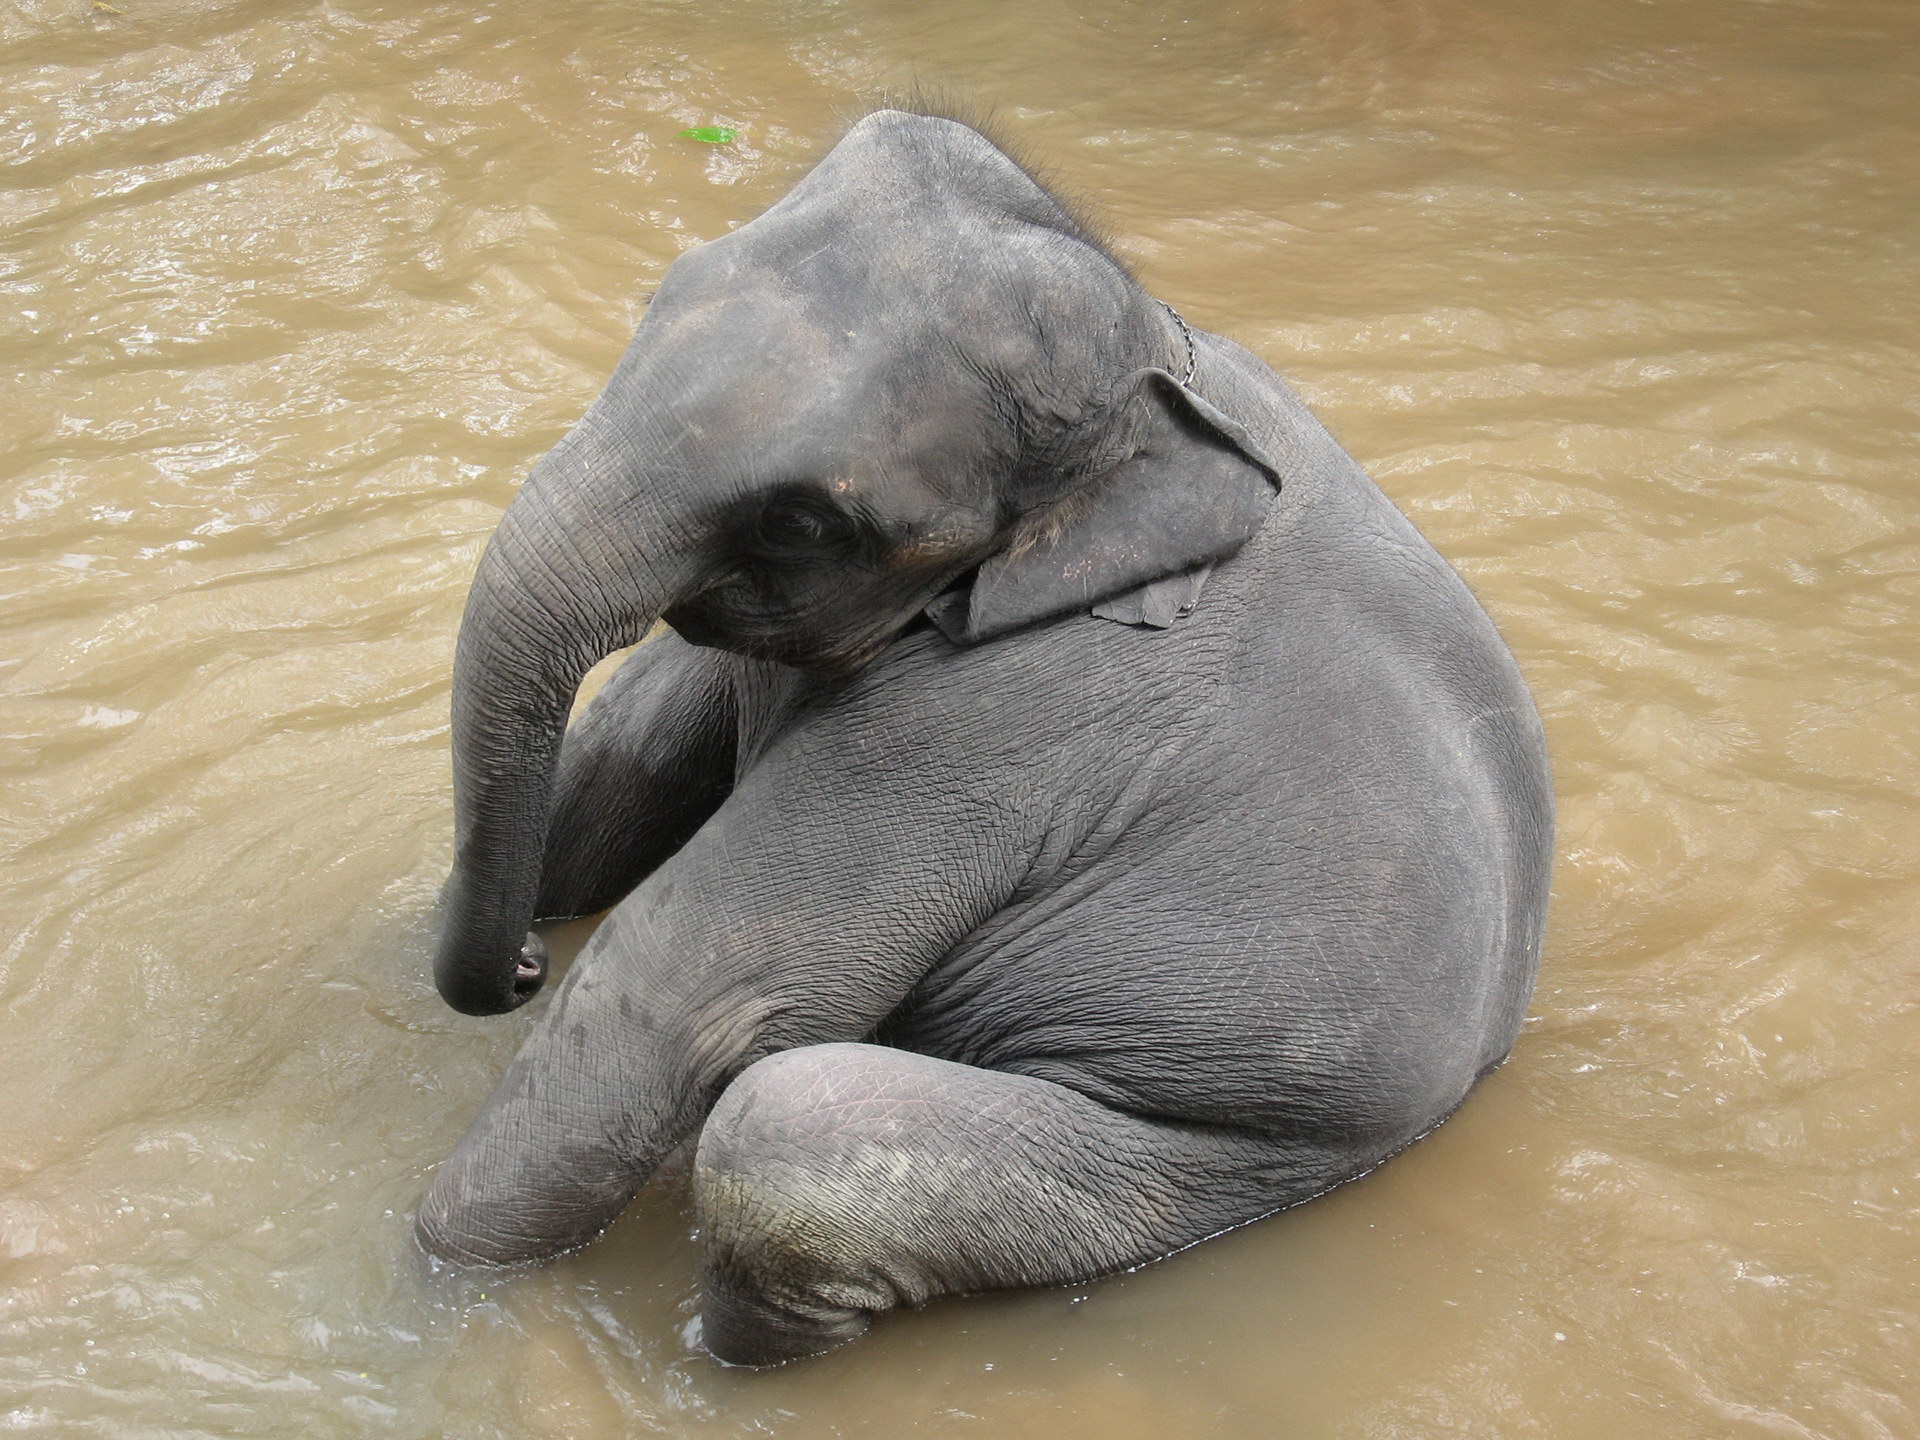 פיל התינוק ישב במים